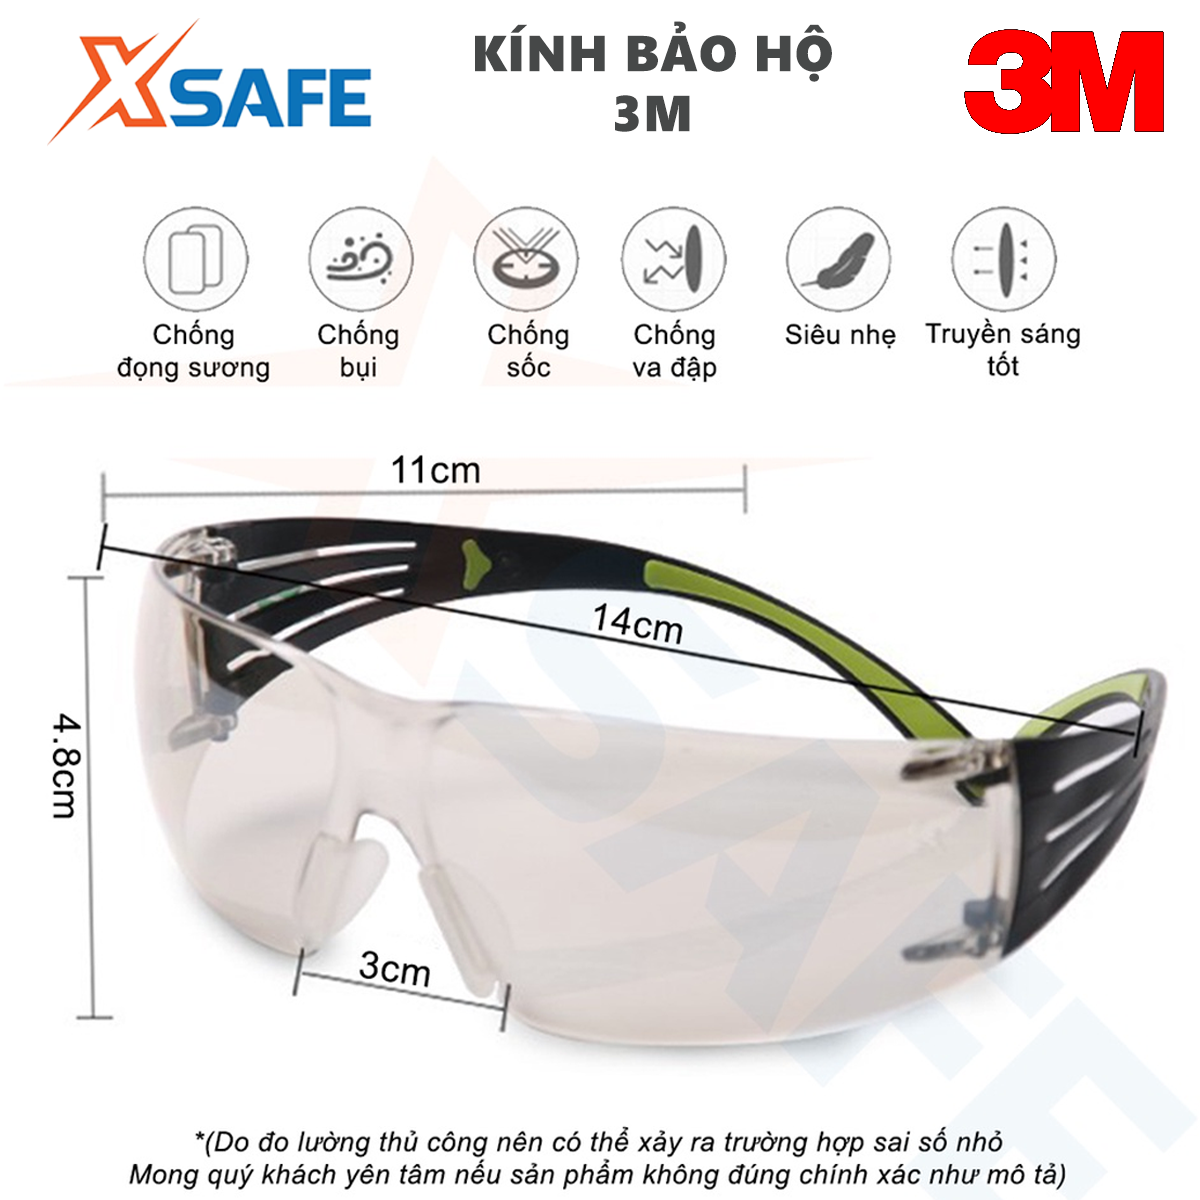 Kính bảo hộ 3M SF401AF kính chống bụi chống tia UV chống đọng sương chống trầy xước (màu trắng) 